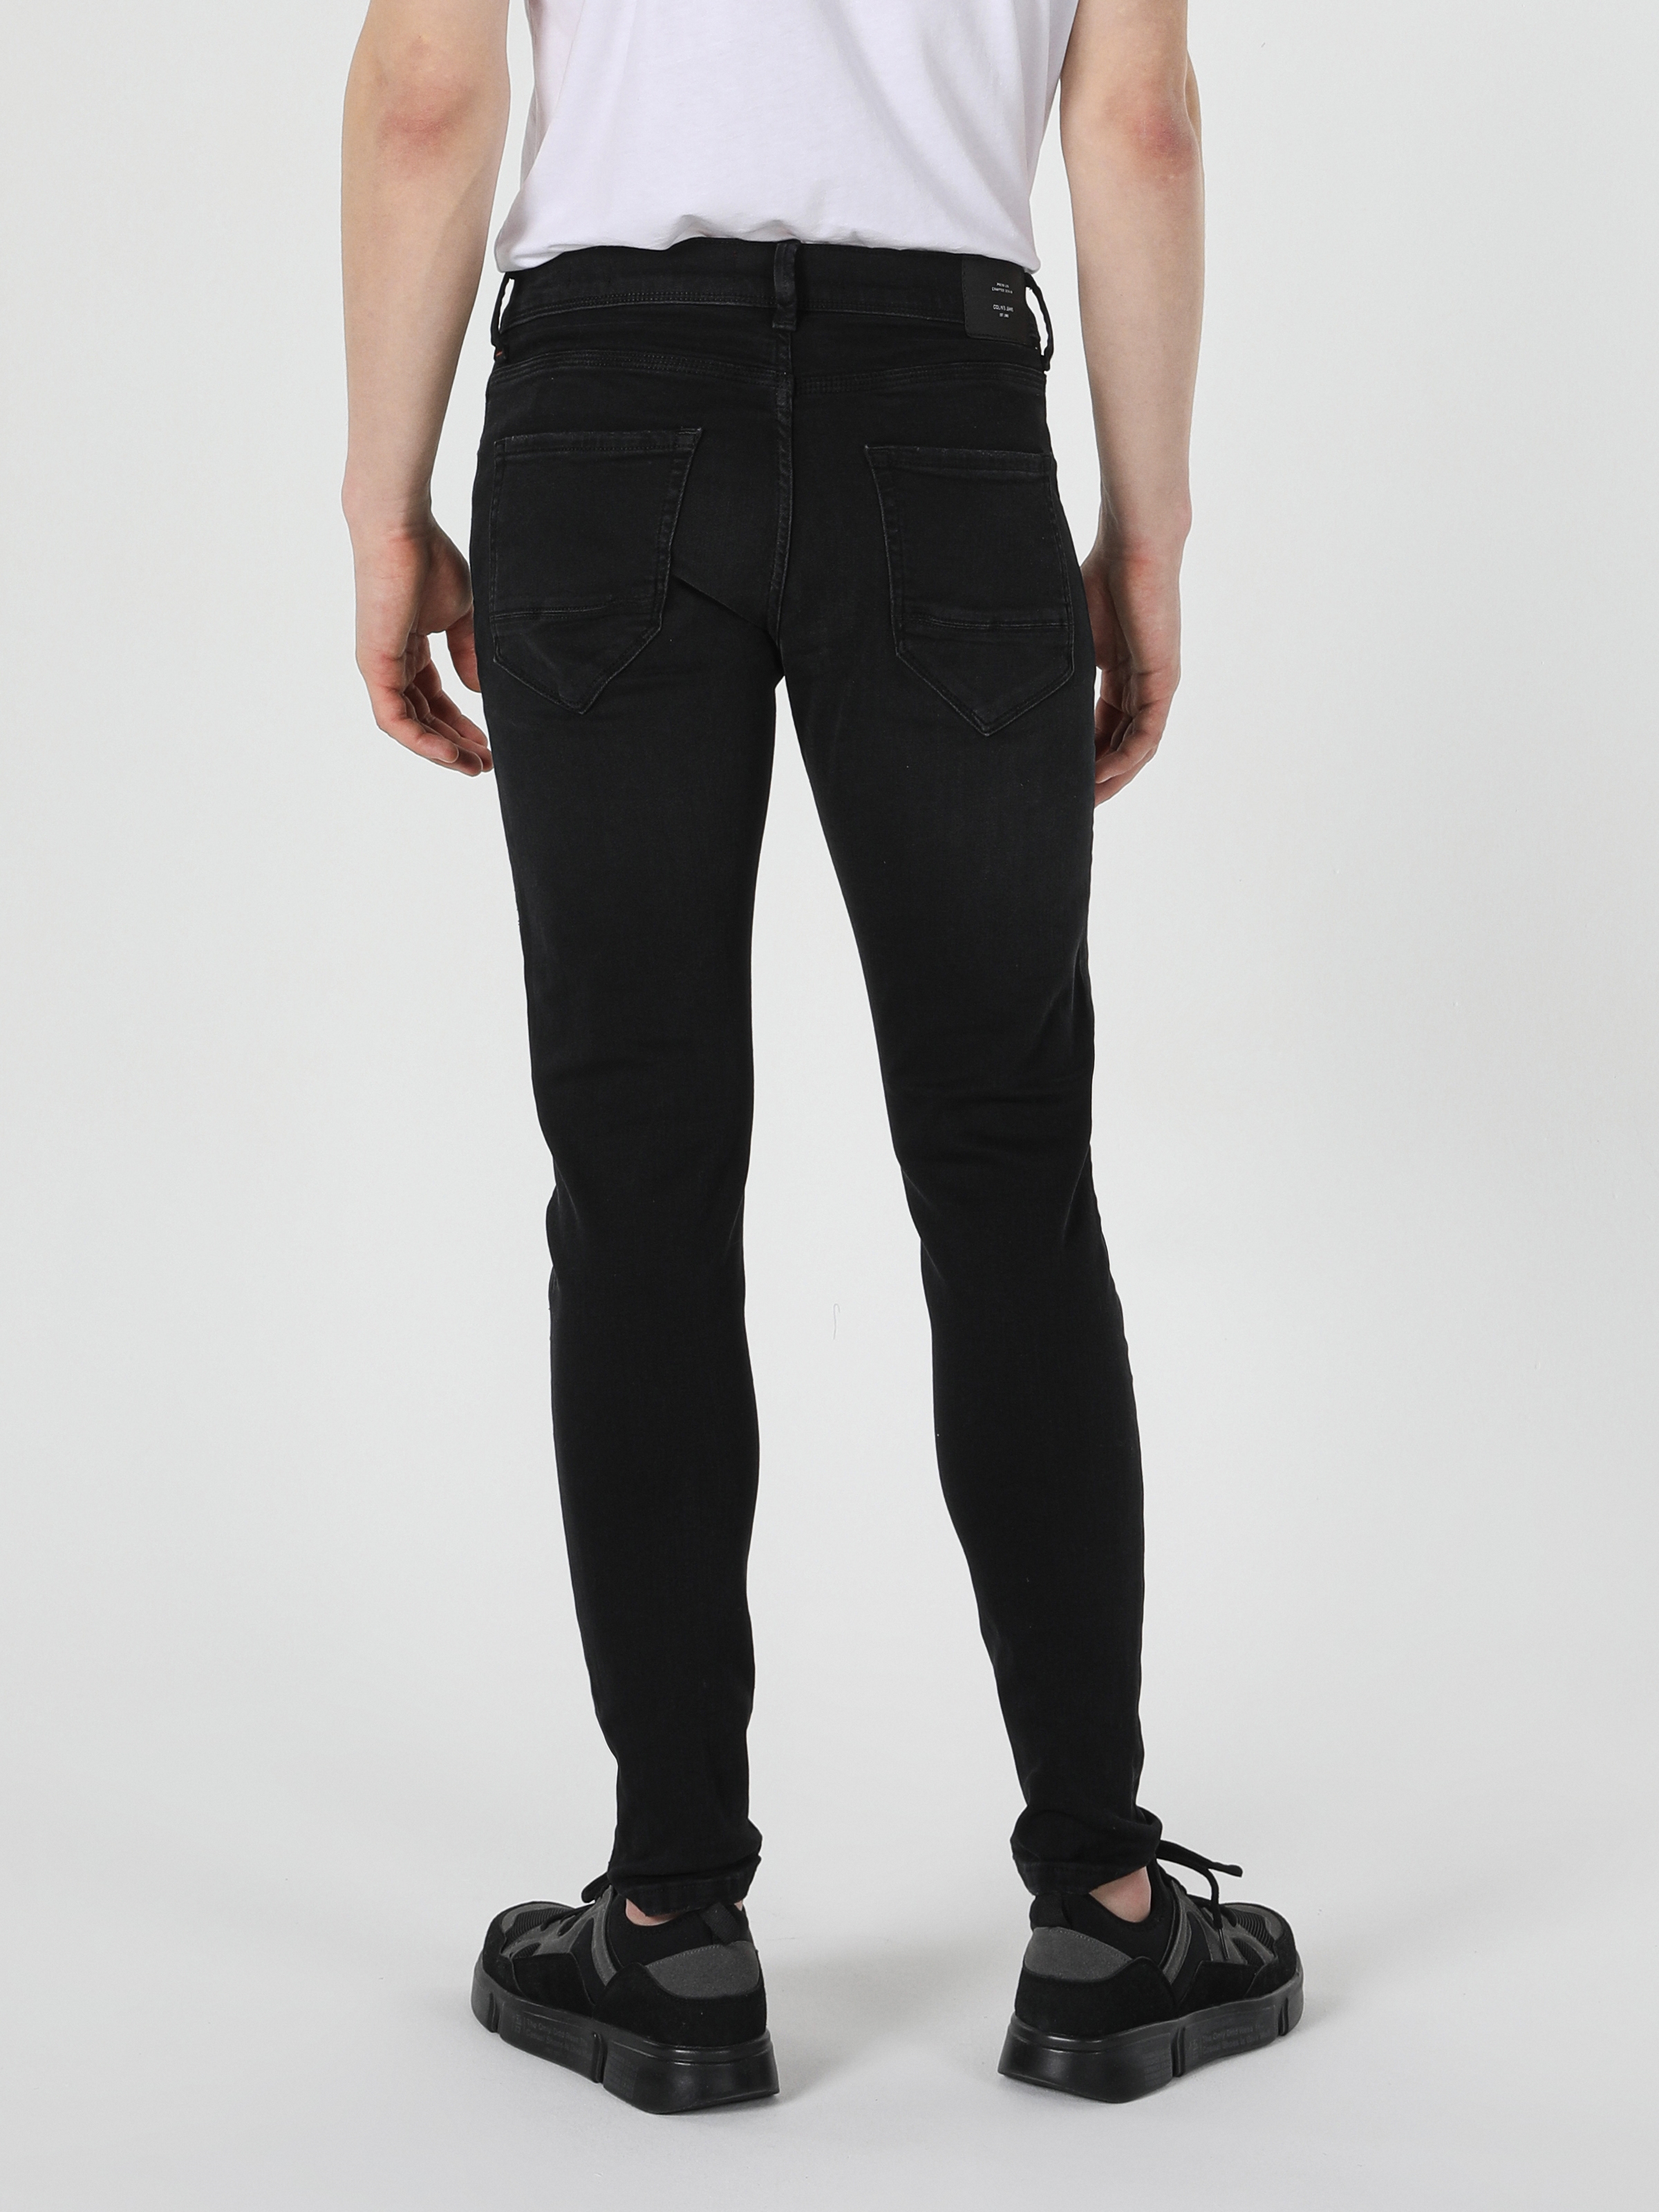 Afficher les détails de 040 Alex Super Slim Fit Taille Basse Pantalon Super Étroit Noir Pour Hommes